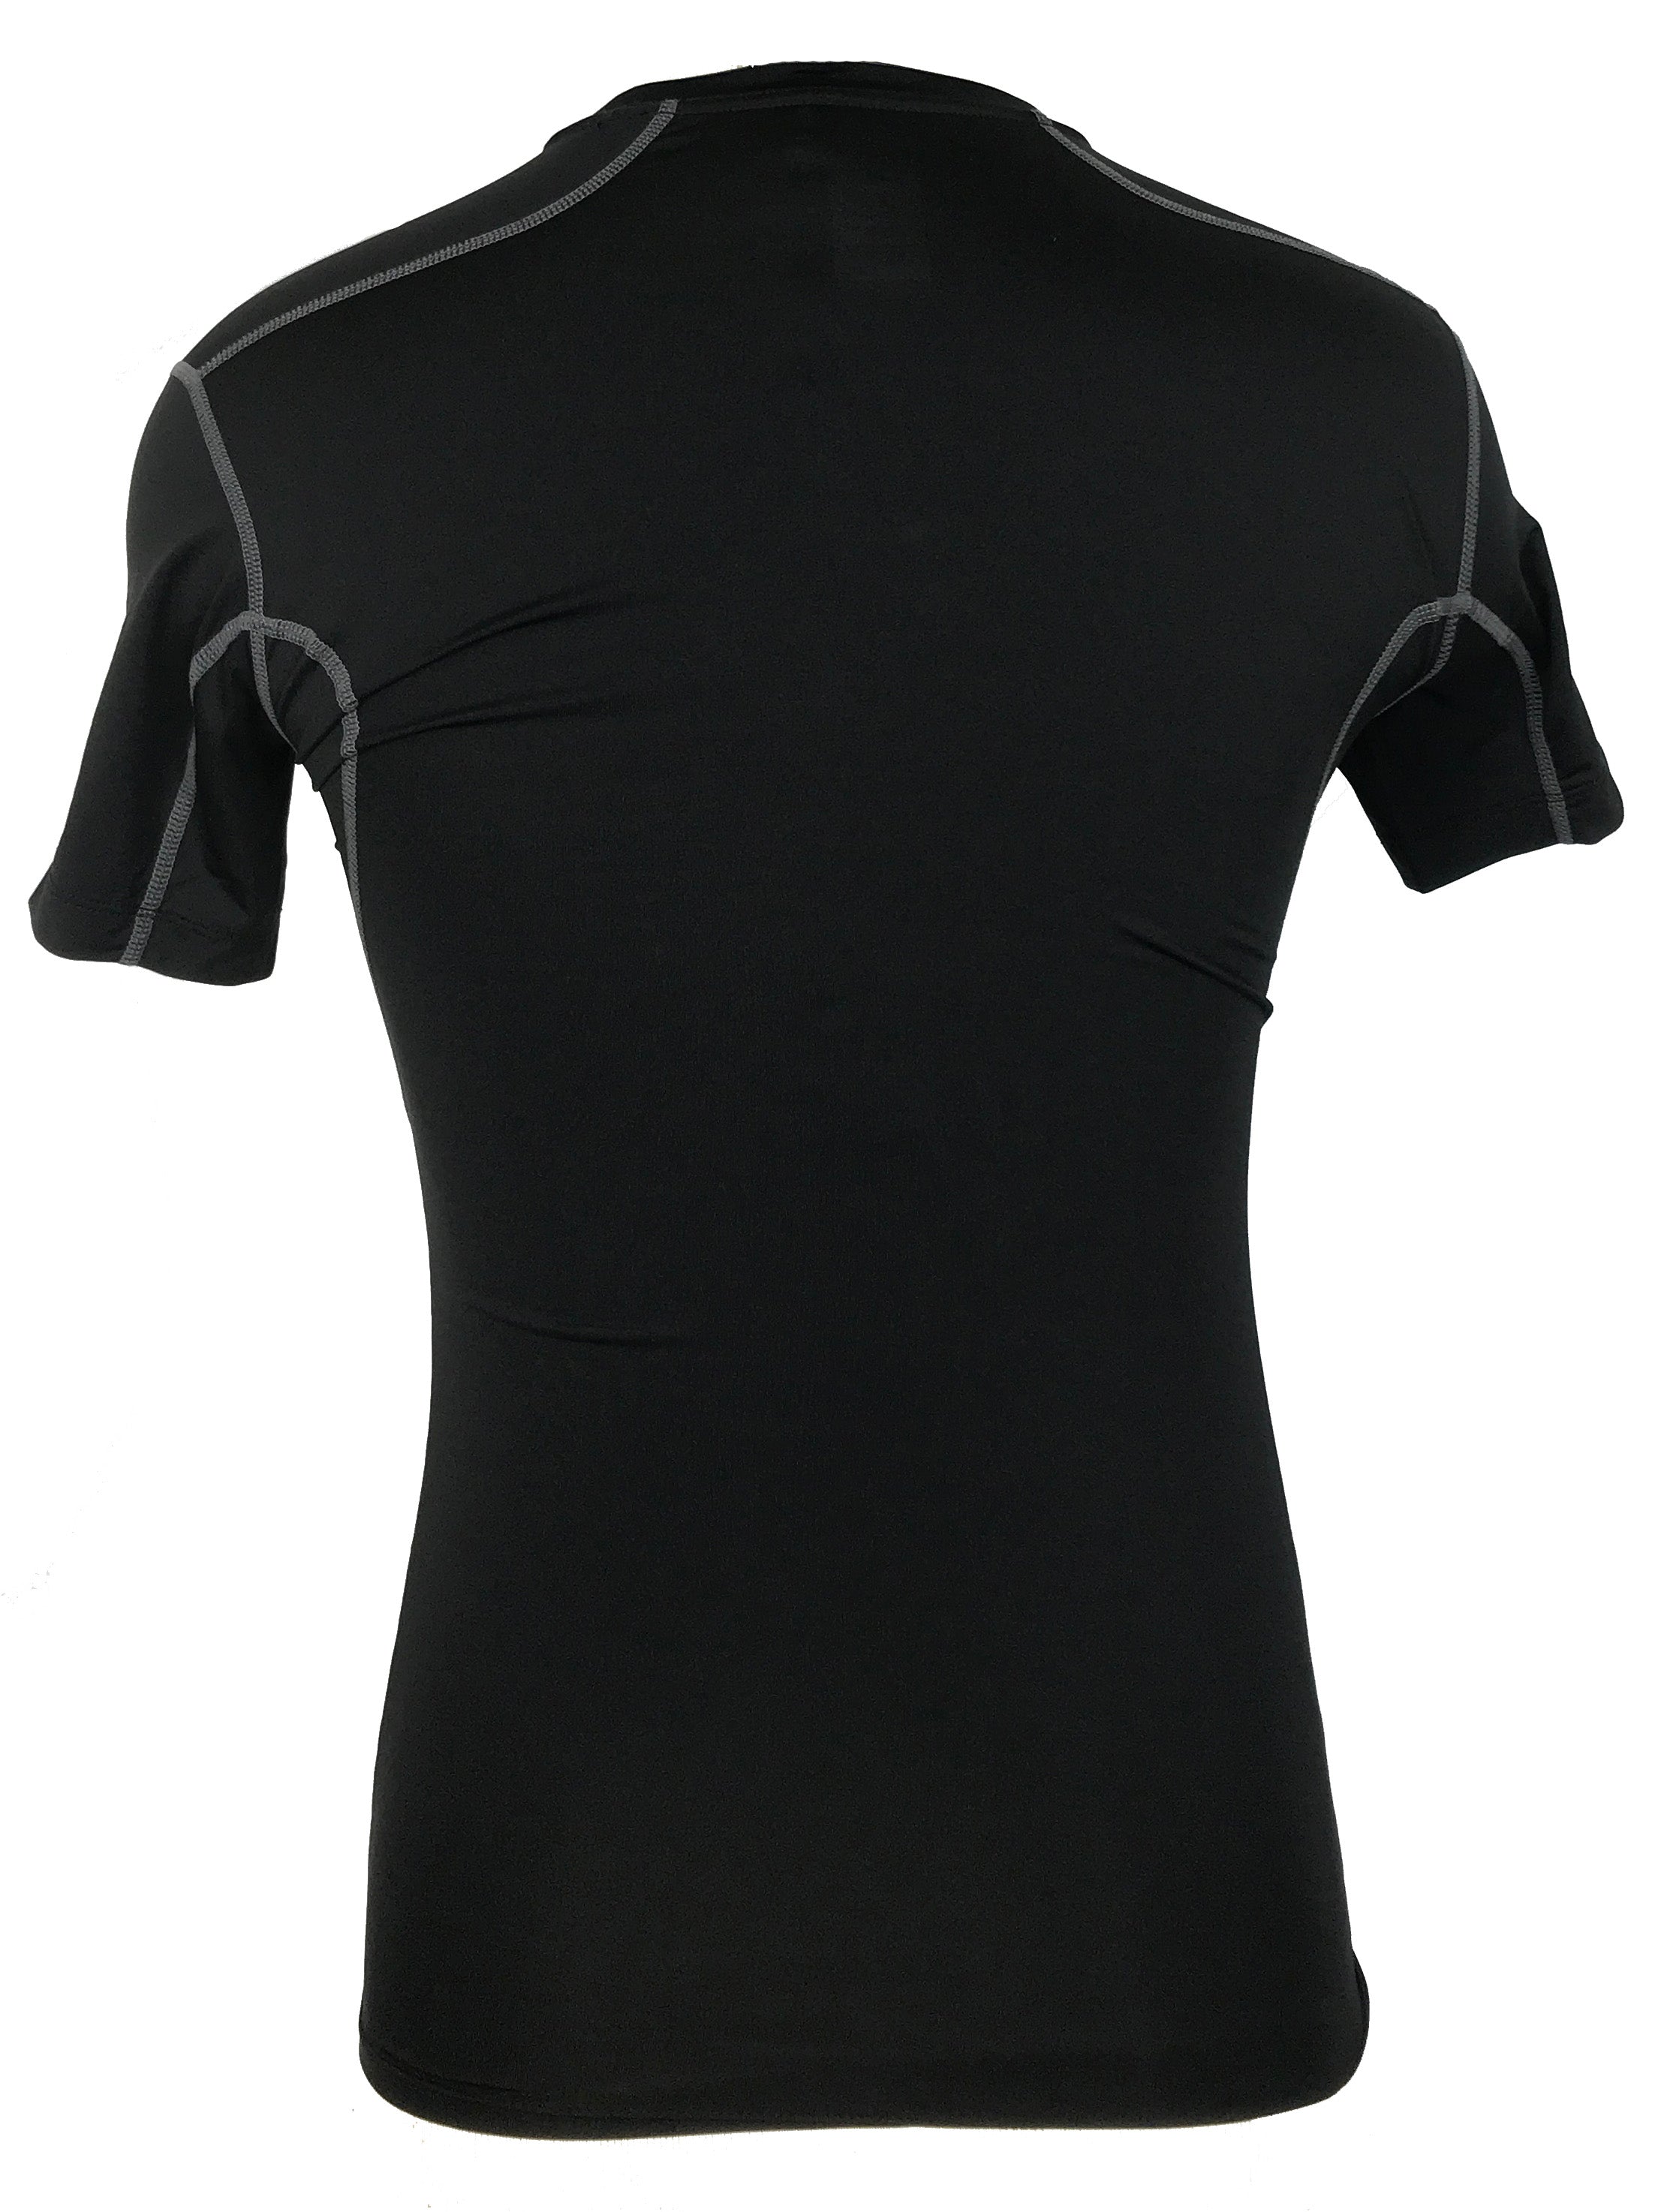 Nike Pro Tight Black T-Shirt Men's size S